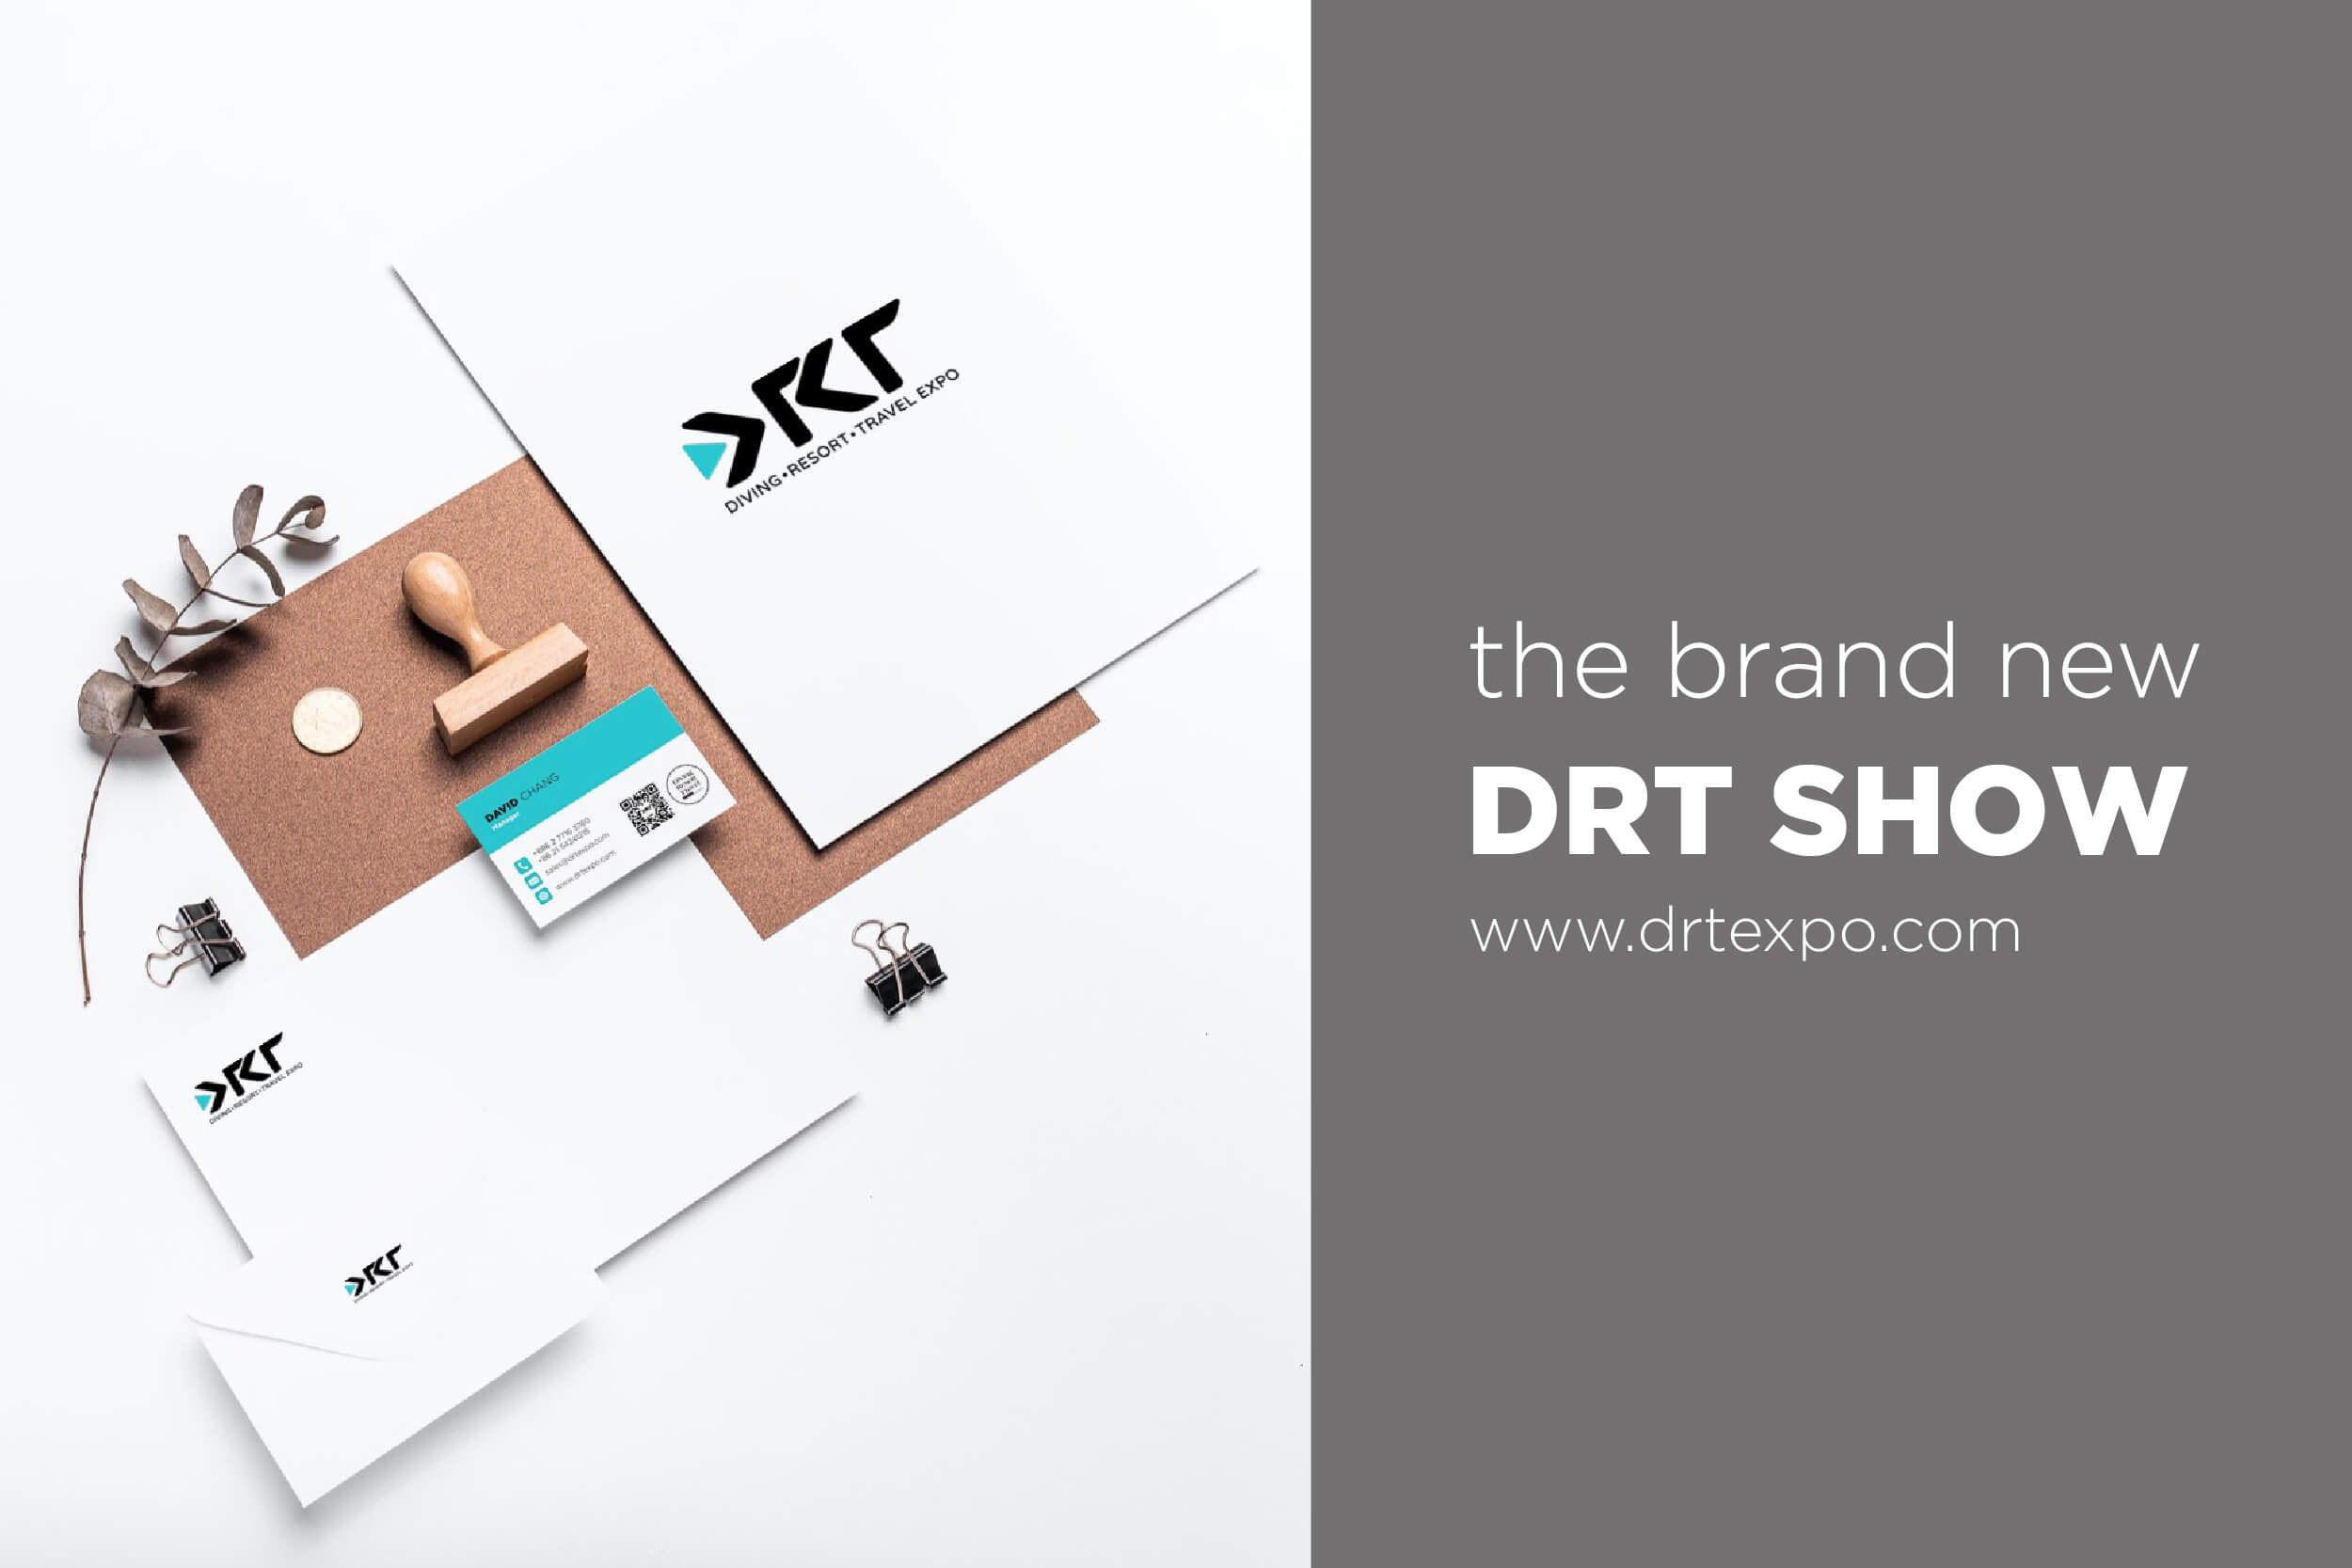 DRT SHOW new logo launch merch 07